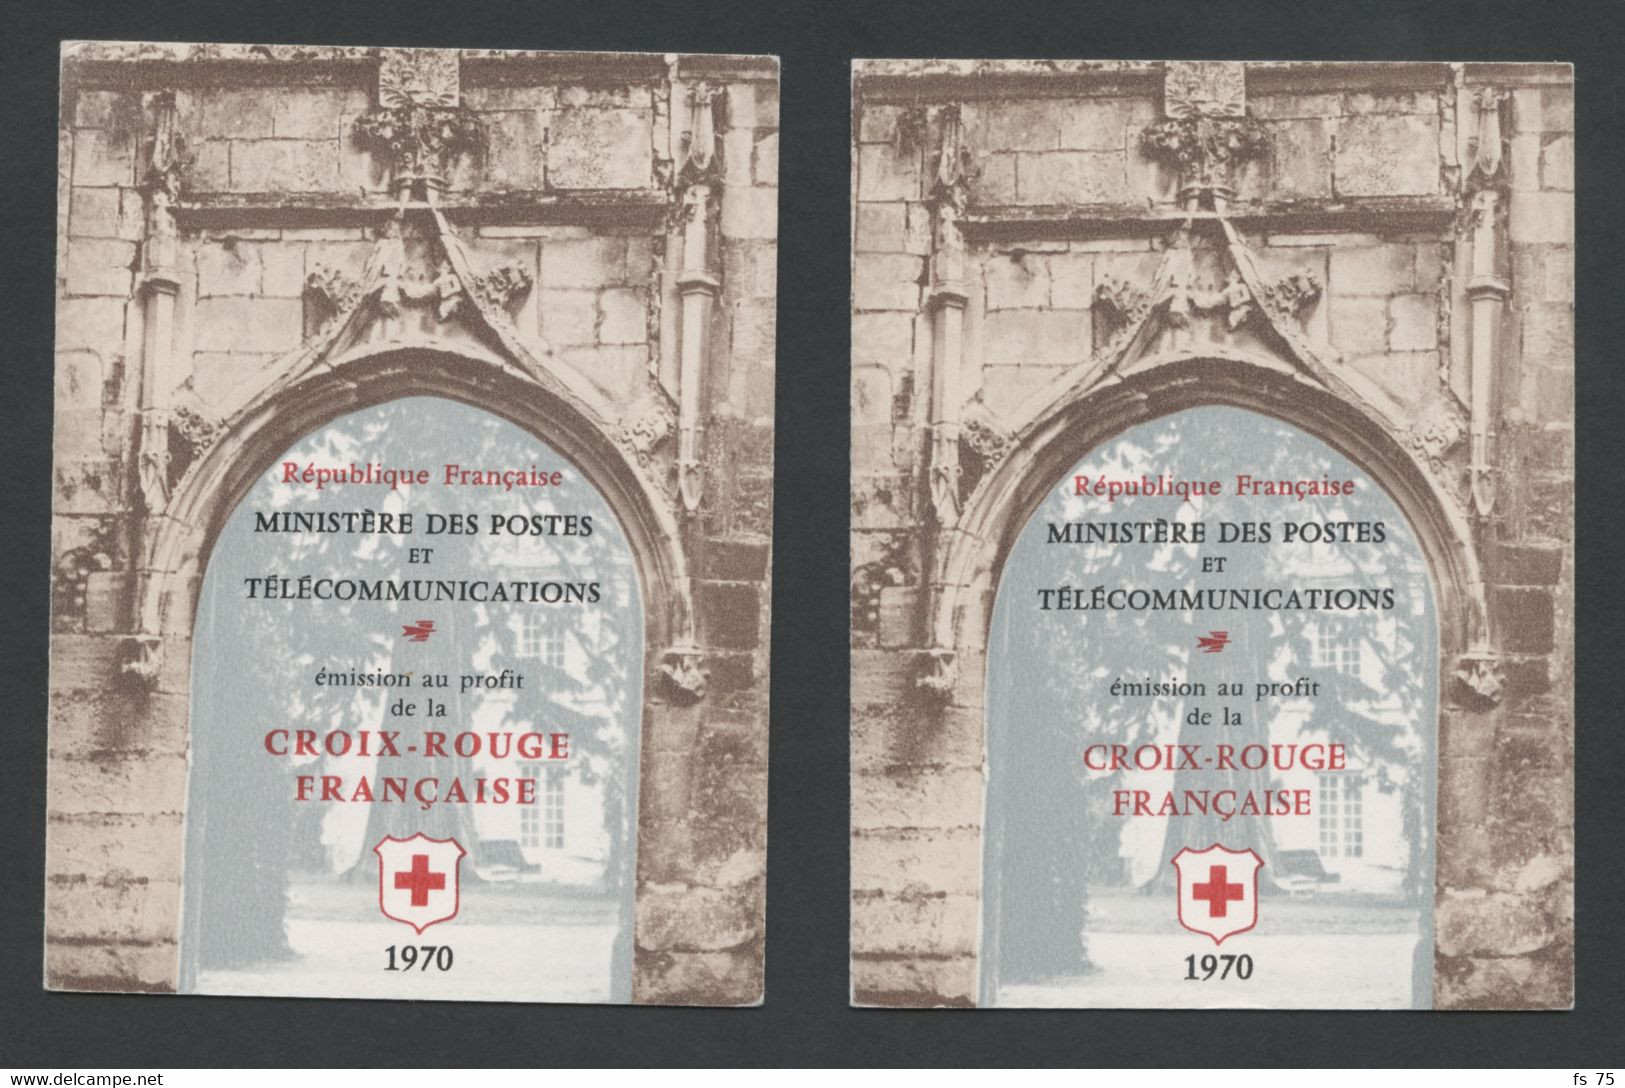 FRANCE - CARNETS N°2019 ET 2019a CROIX ROUGE 1970 - INSCRIPTIONS SUR LA COUVERTURE DE 32MM ET 27MM - Red Cross